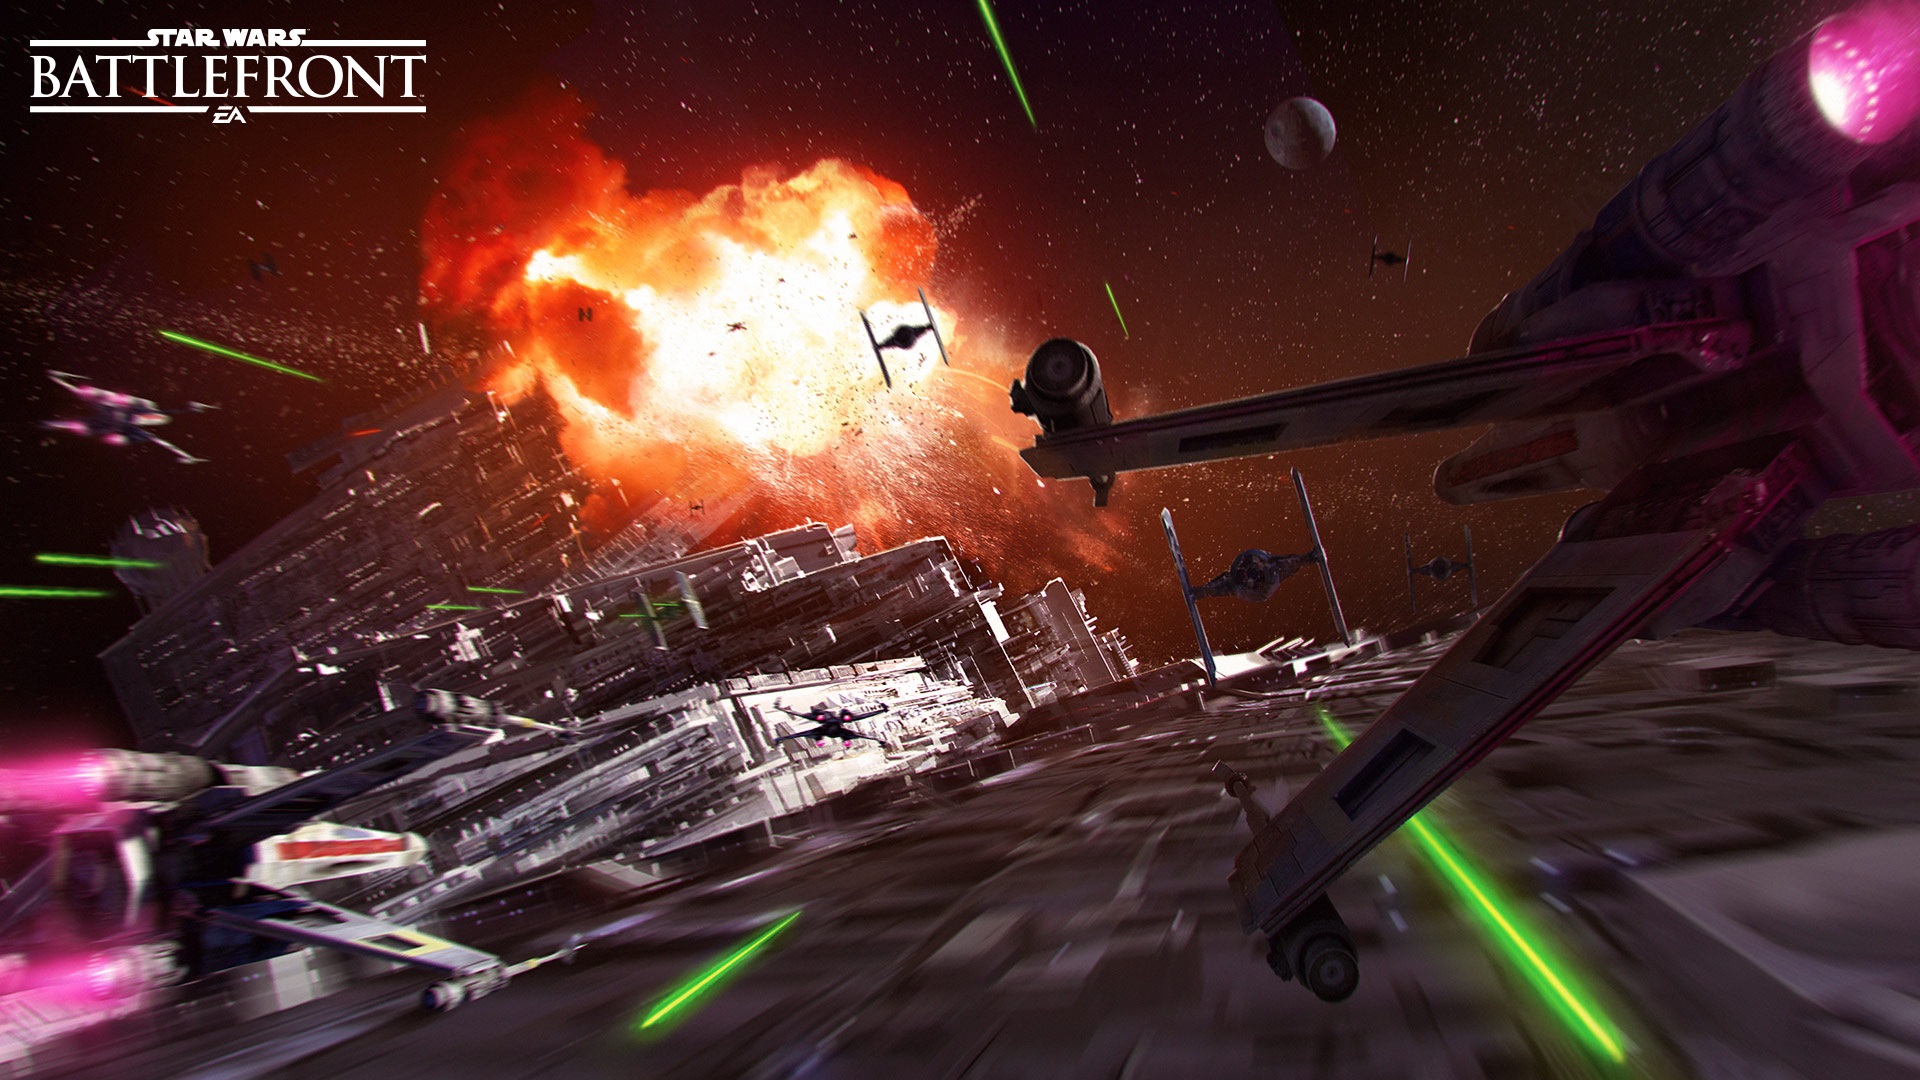 Star Wars Battlefront - Death Star DLC - launch trailer